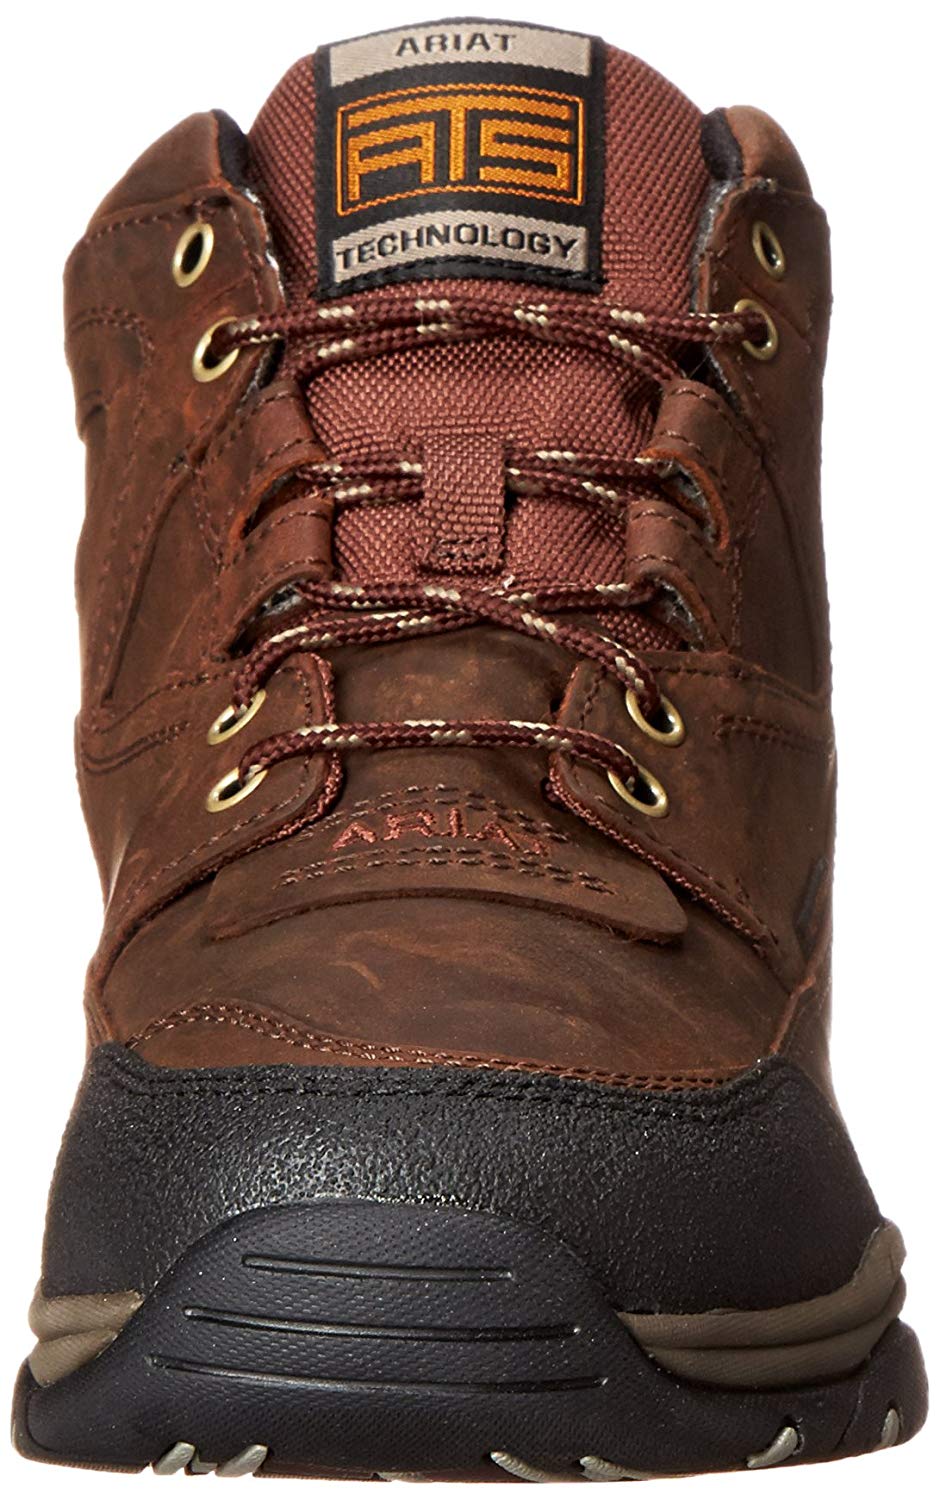 Ariat Men's Terrain H2O Hiking Boot Copper, Copper, Size 11.5 Fmhw ...